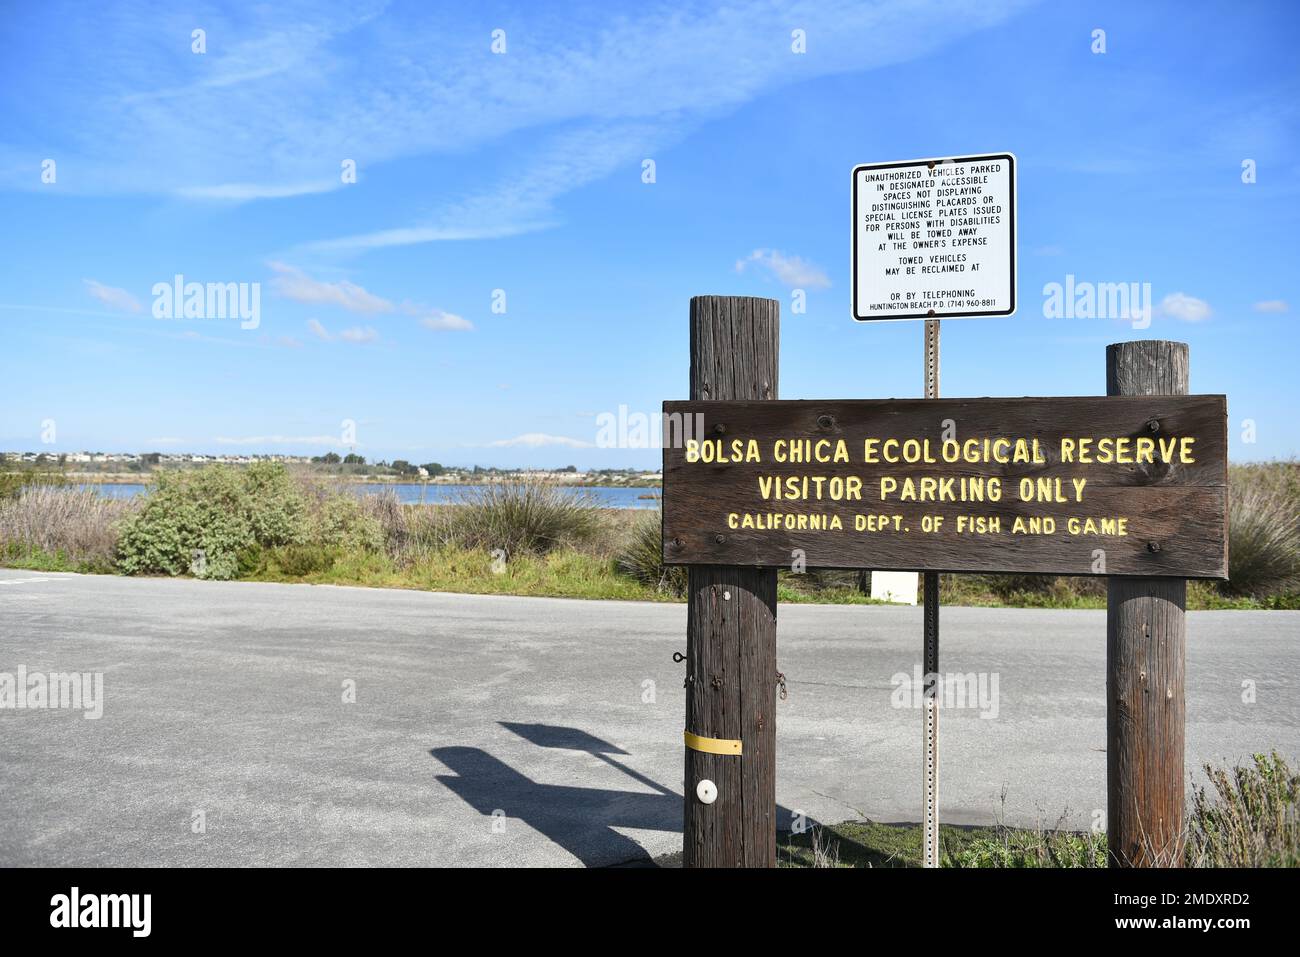 HUNTINGTON BEACH, CALIFORNIE - 18 JANVIER 2023 : panneau à l'entrée du parc de stationnement de PCH pour la réserve écologique Bolsa Chica, le plus grand marais d'eau salée Banque D'Images